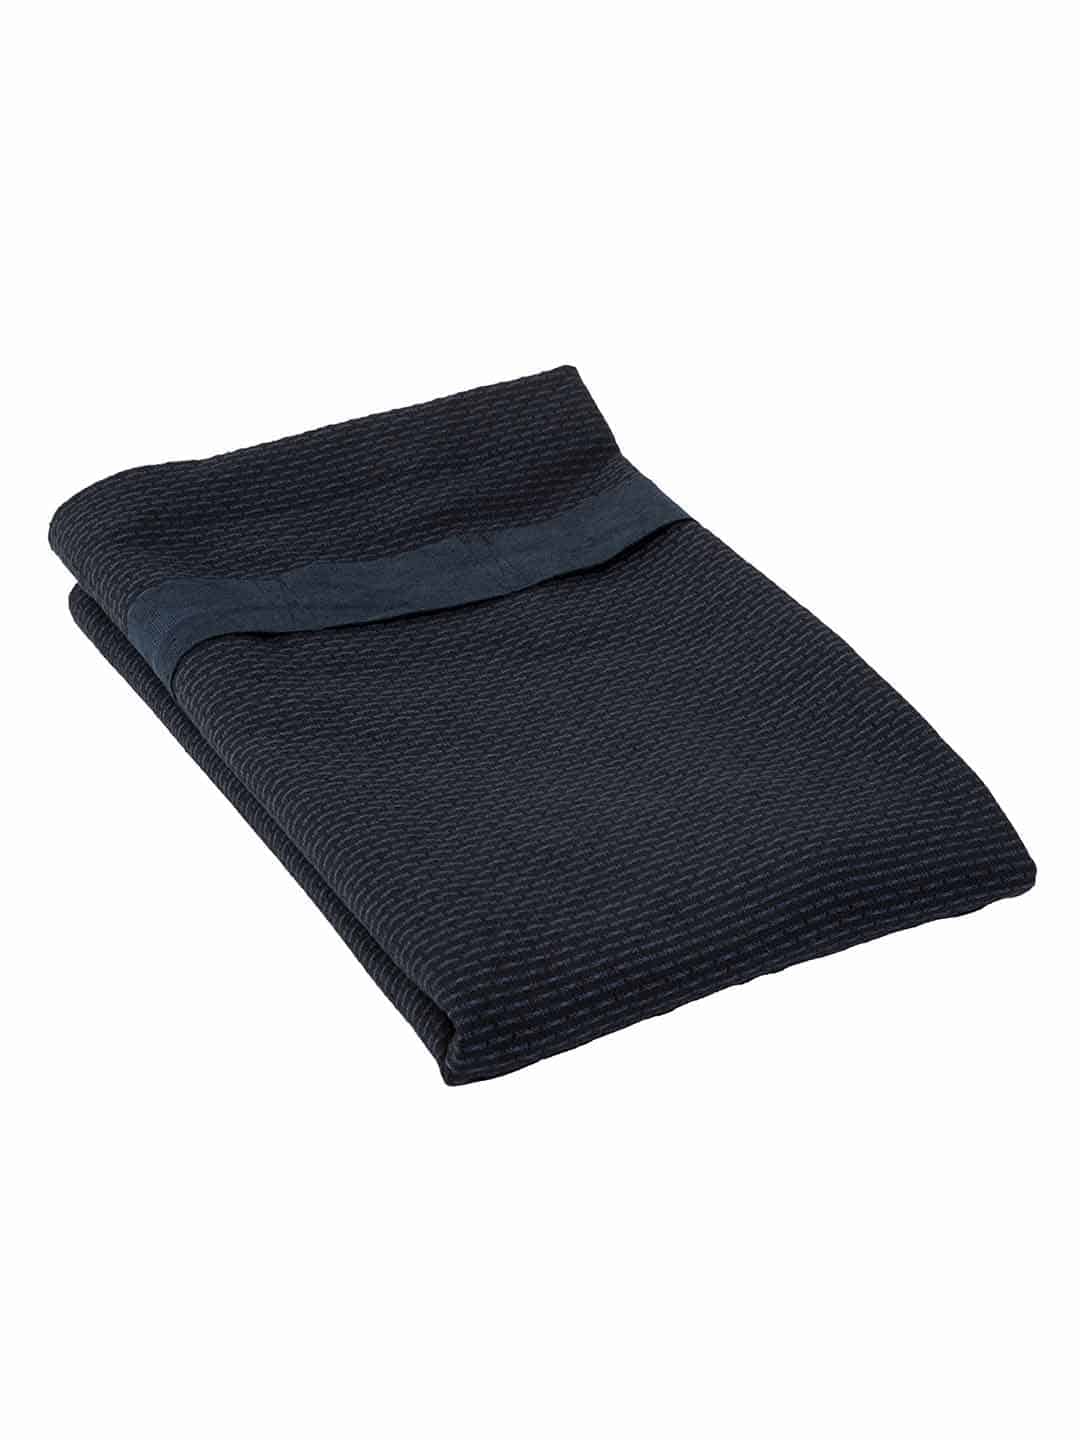 Полотенце для тела с поясом, 155х60см сине-черного цвета в скандинавском стиле